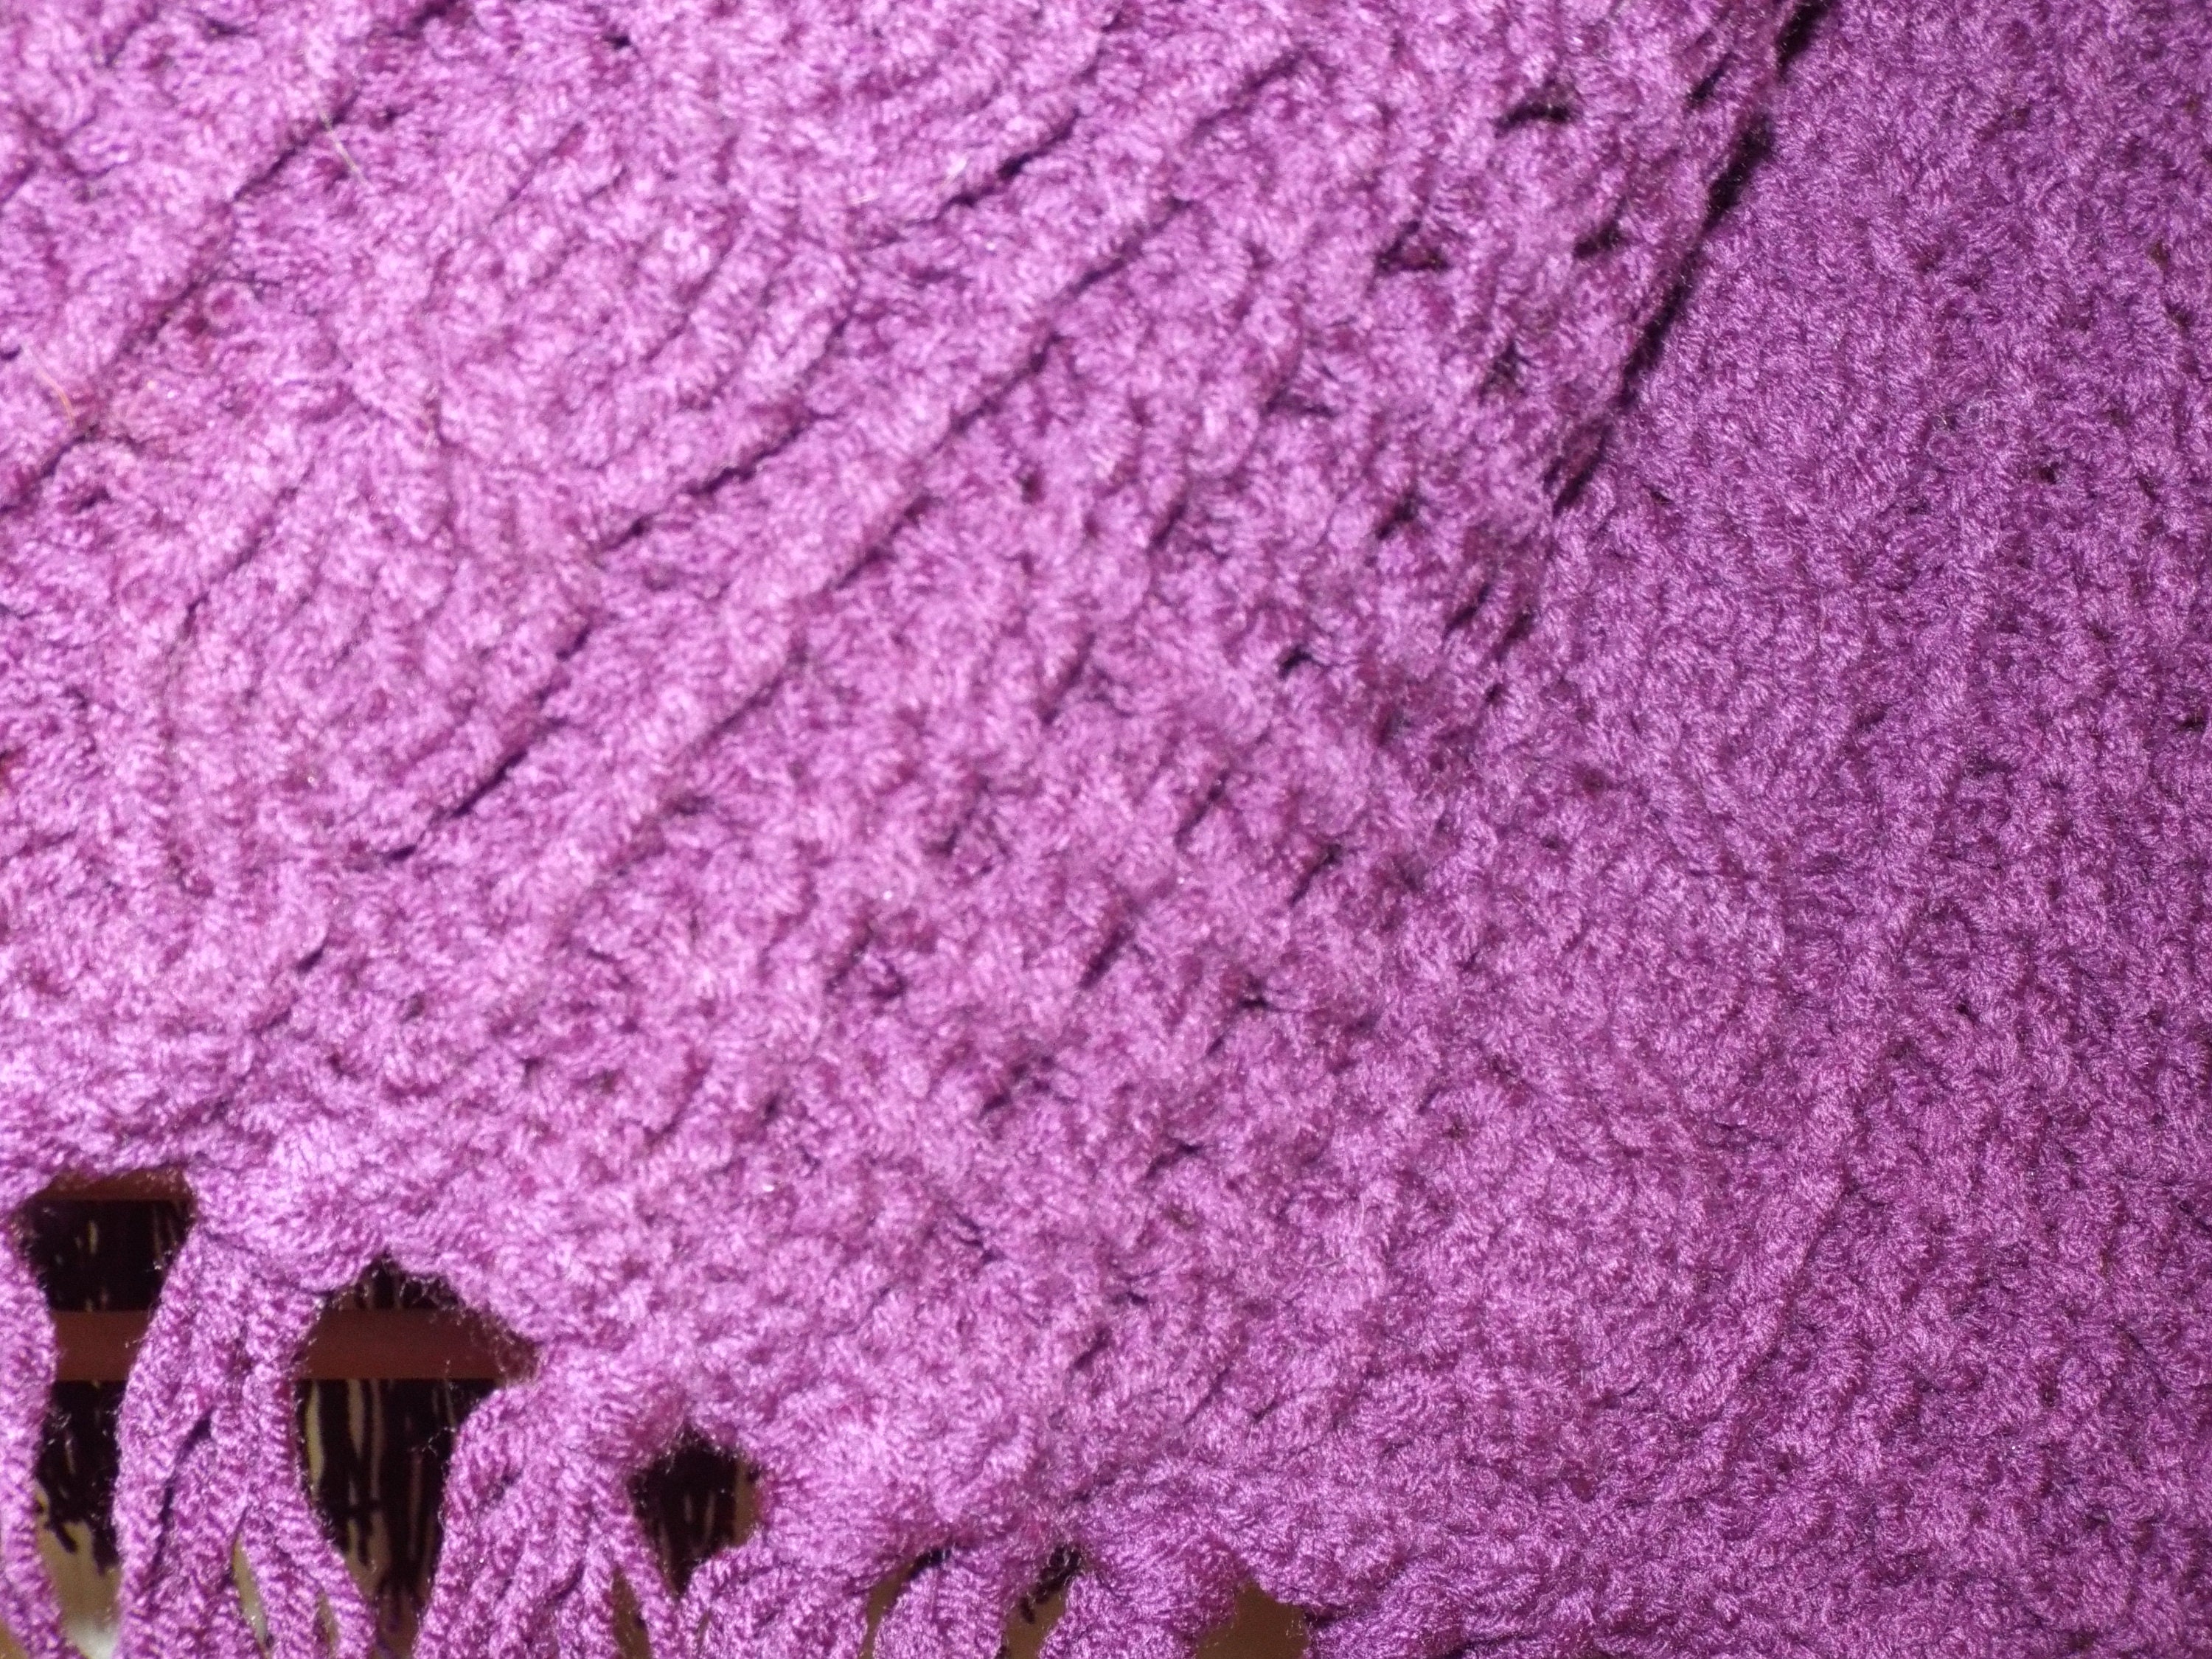 Deep Purple Crocheted Afghan Warm Winter Handmade Blanket | Etsy